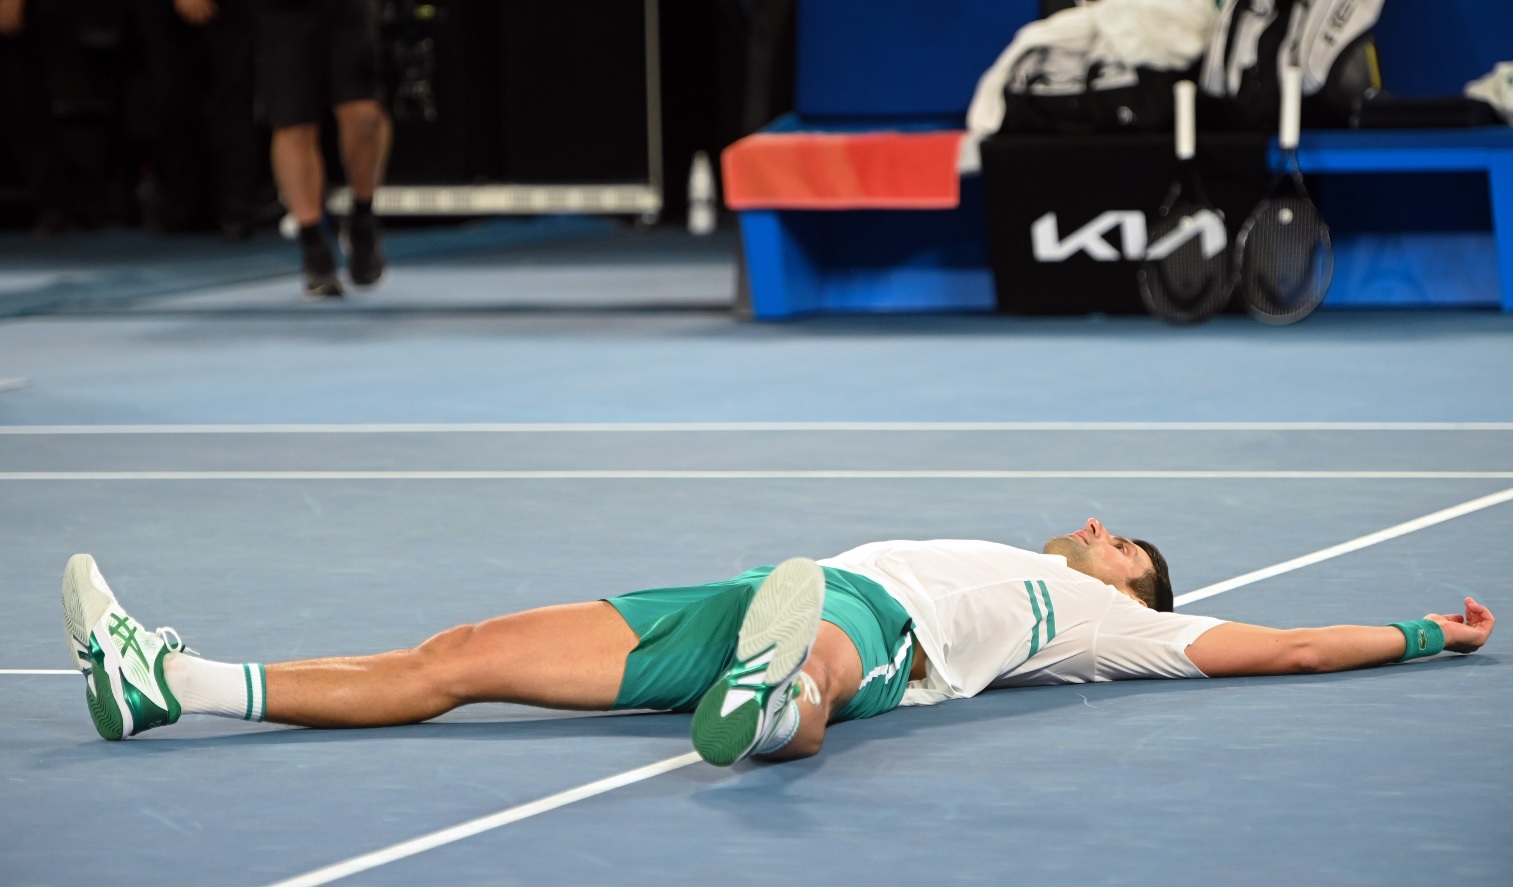 Novak Djokovic, dialog savuros cu Medvedev după finala de la Australian Open. "Nu m-ai mai sunat în ultimii doi ani". Persoana care a contribuit cel mai mult la victorie